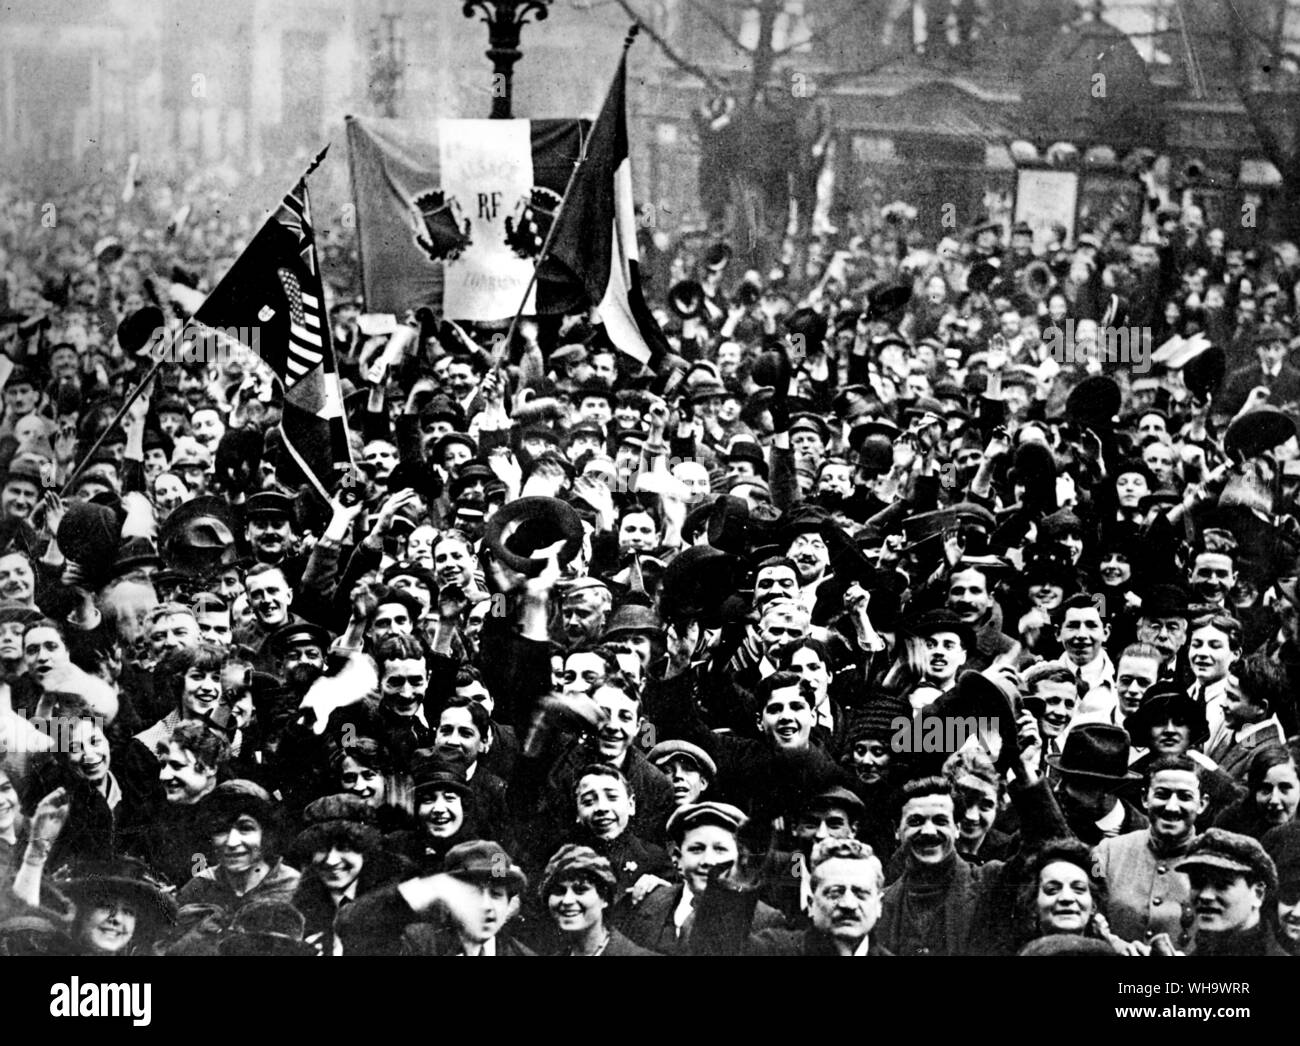 Ww1: Francia. Los bulevares de París se llenaba de gente- riendo, cantando y aclamando - como la noticia del armisticio barrió la capital francesa el 11 de noviembre de 1918. Foto de stock